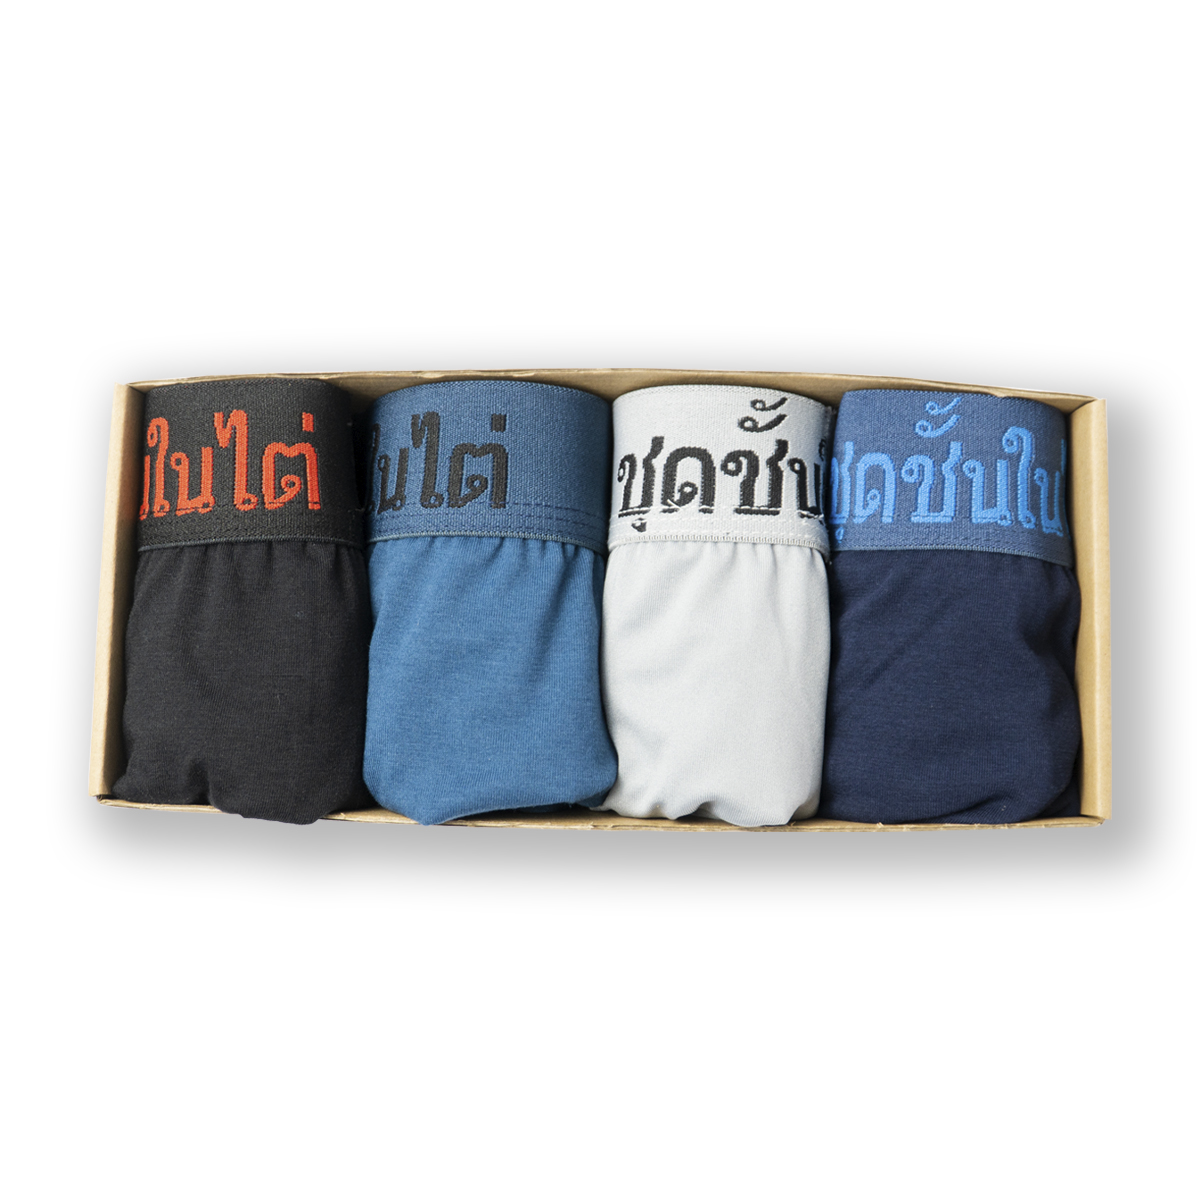 Hộp 4 Quần lót nam boxer cao cấp lưng Thái Lan CITYMEN vải cotton 4 chiều sịp đùi nam - Giao màu ngẫu nhiên